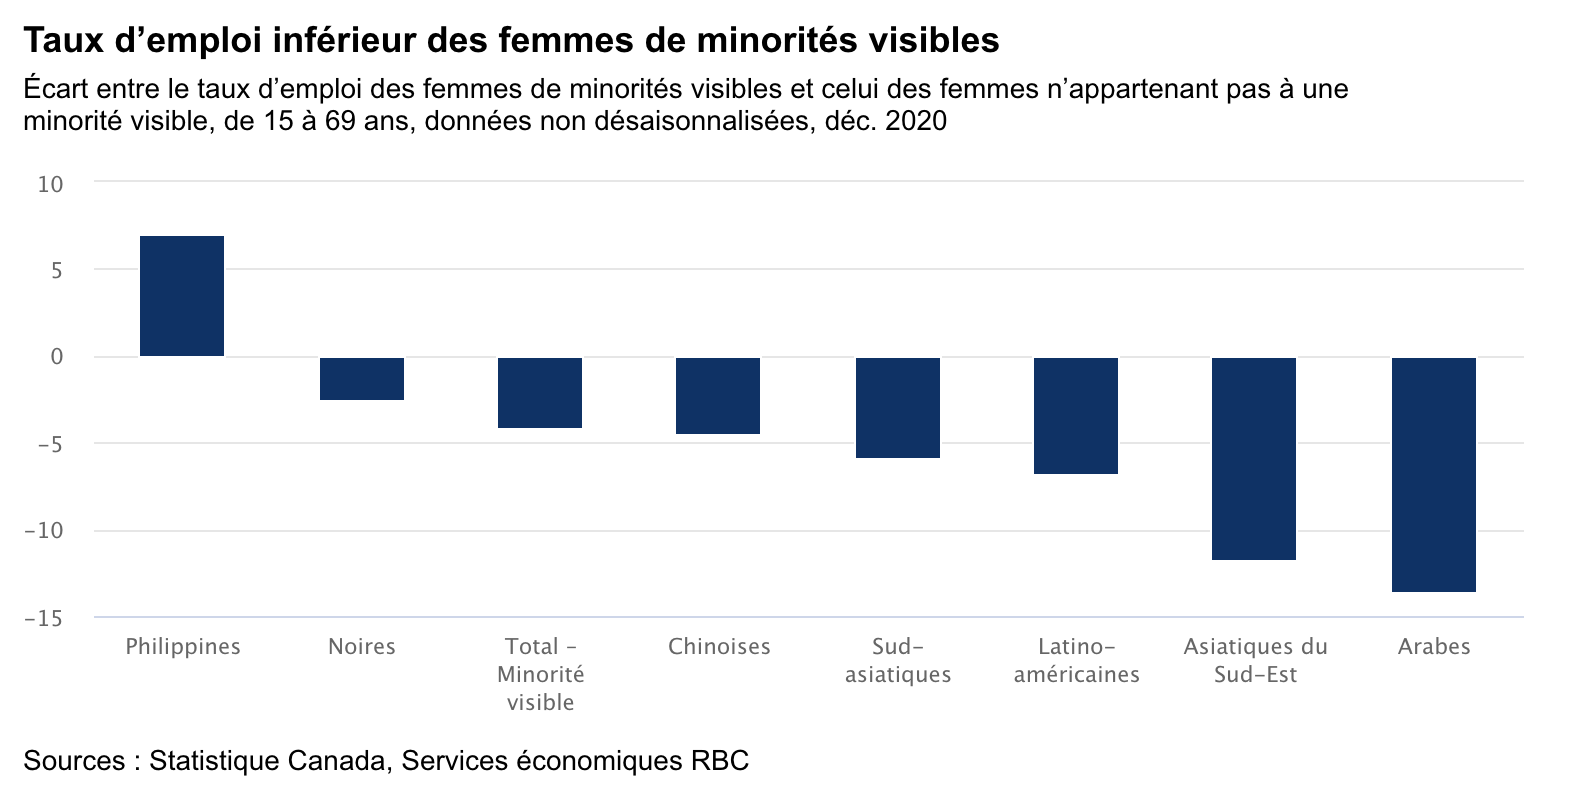 Ce graphique montre taux d'emploi inferieur des femmes de minorites visibles